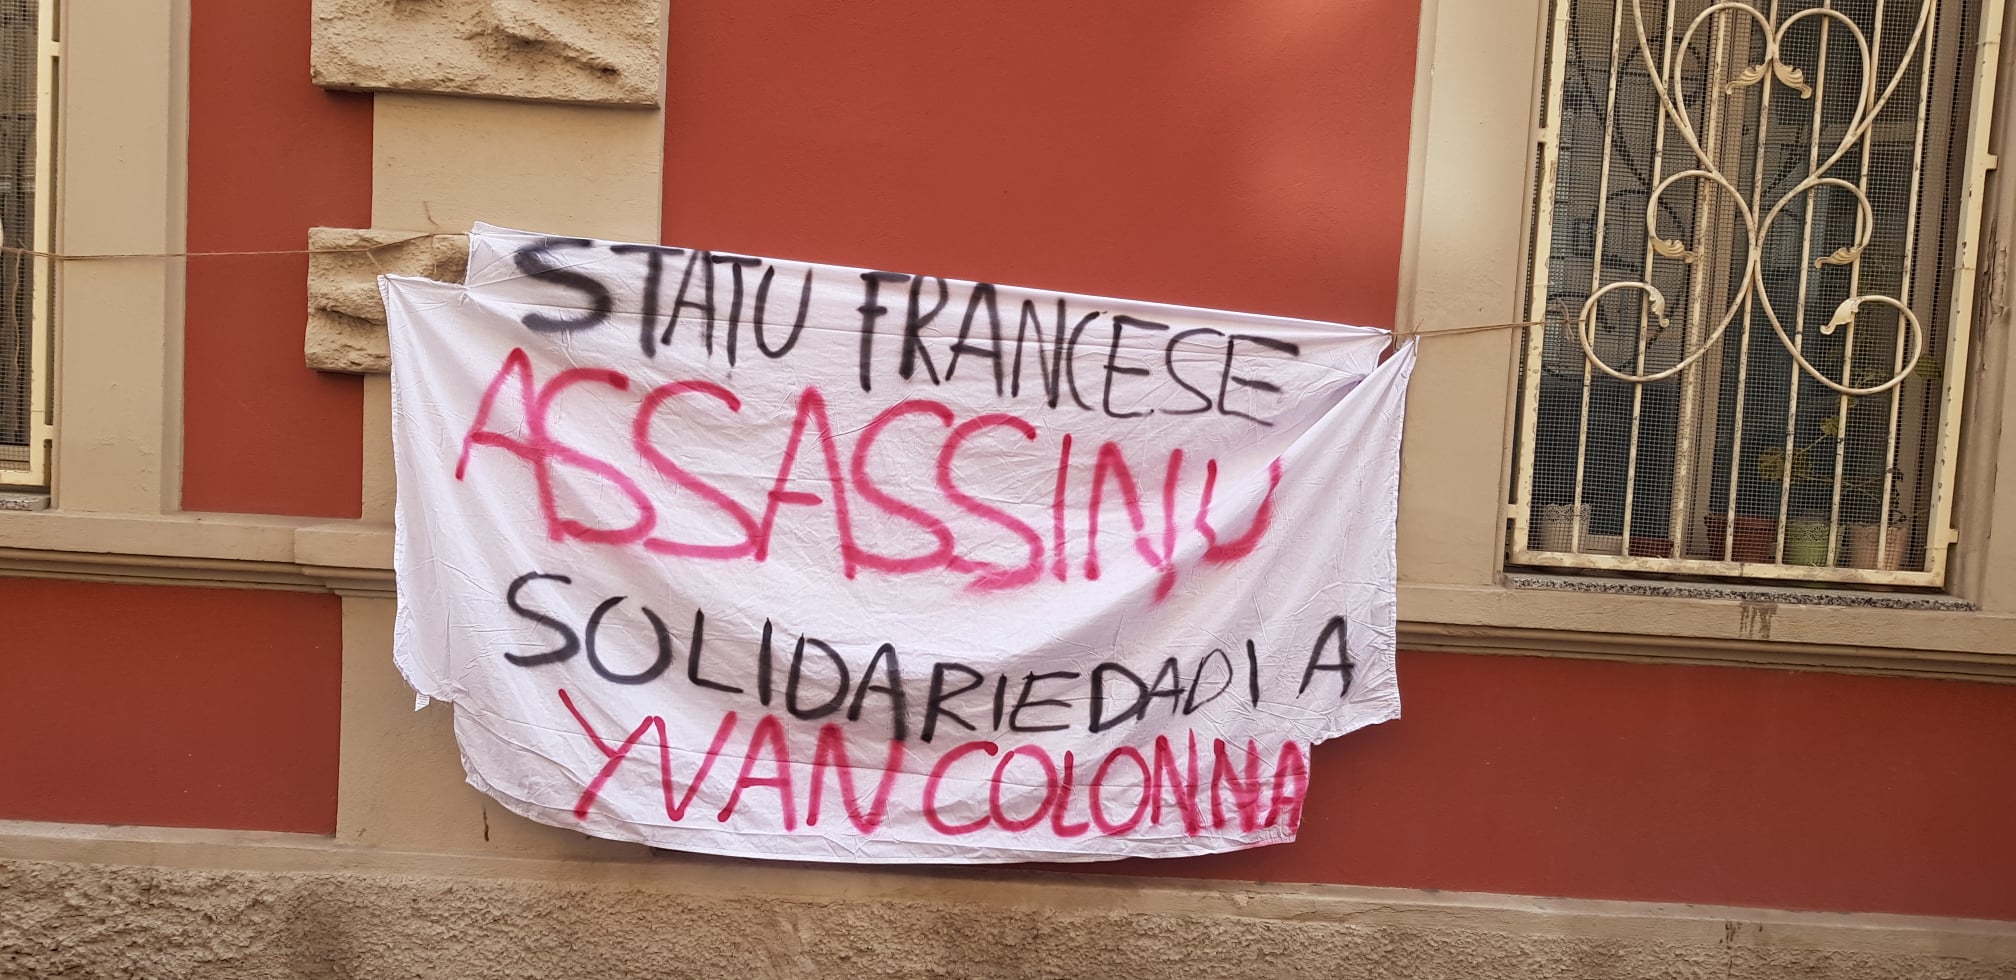 Cagliari – solidarietà a Yvan Colonna e al popolo corso in lotta.